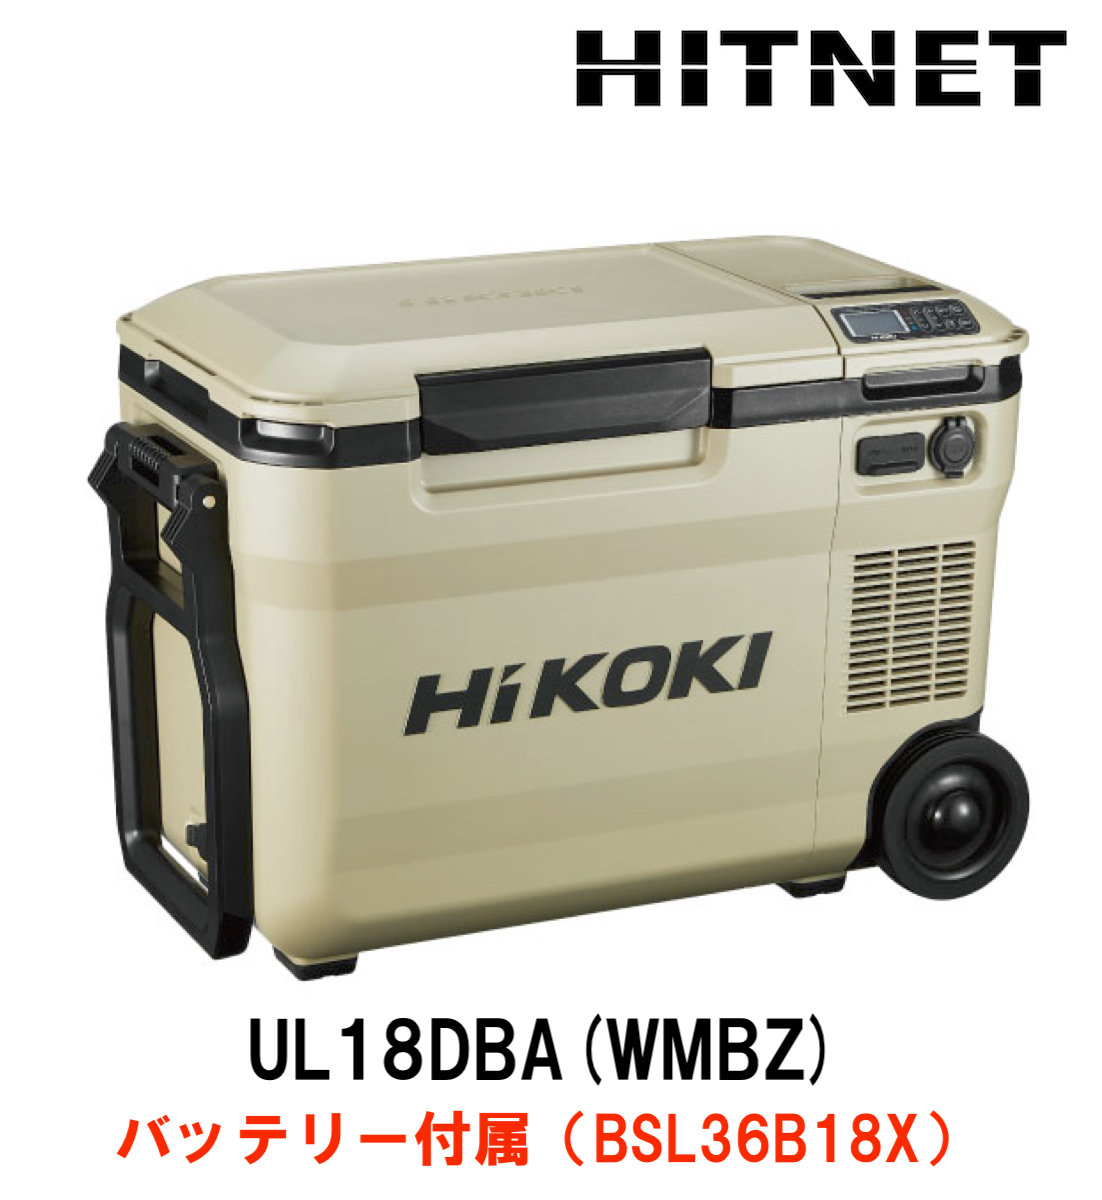 ハイコーキ 冷温庫 UL18DBA(WMBZ）バッテリー付属 : hitnet-0808 